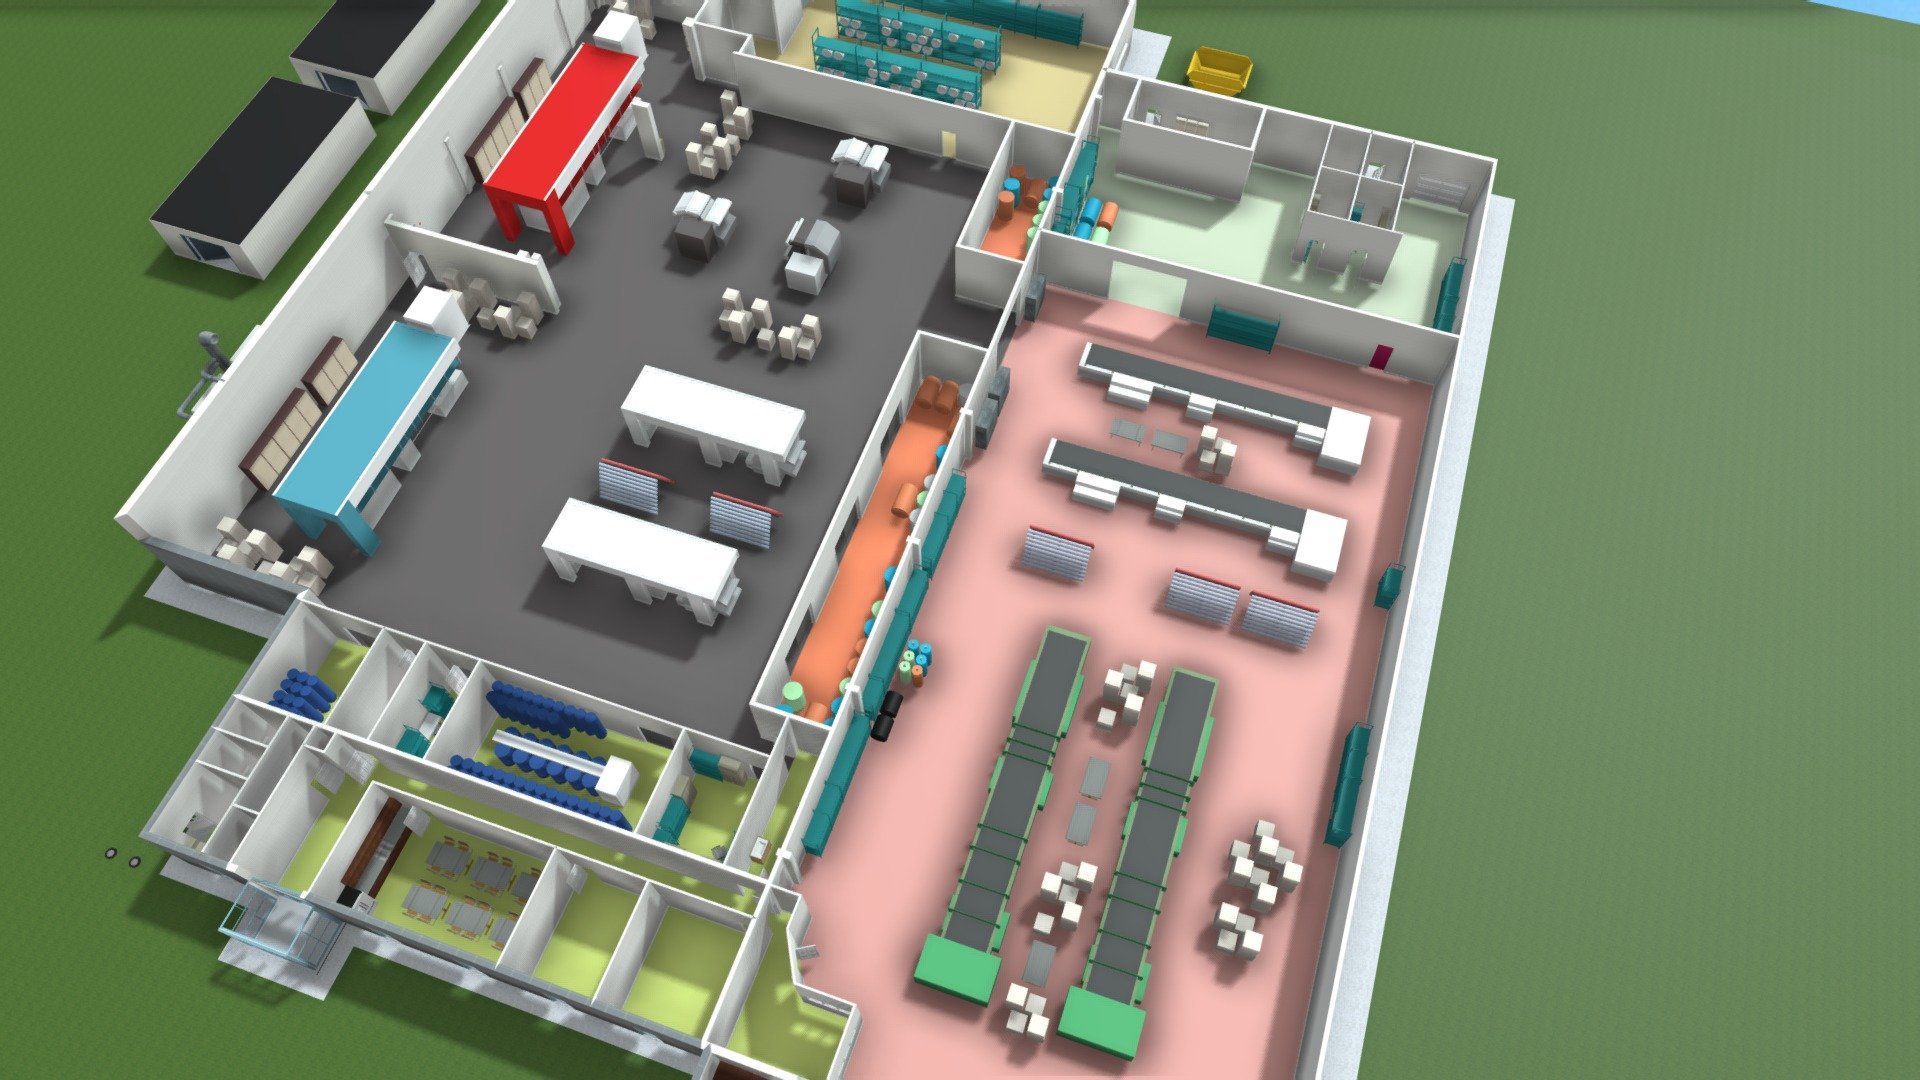 Factory Floor Plan 3d Model By Virtual Teic Dyb F4a43b7 Sketchfab